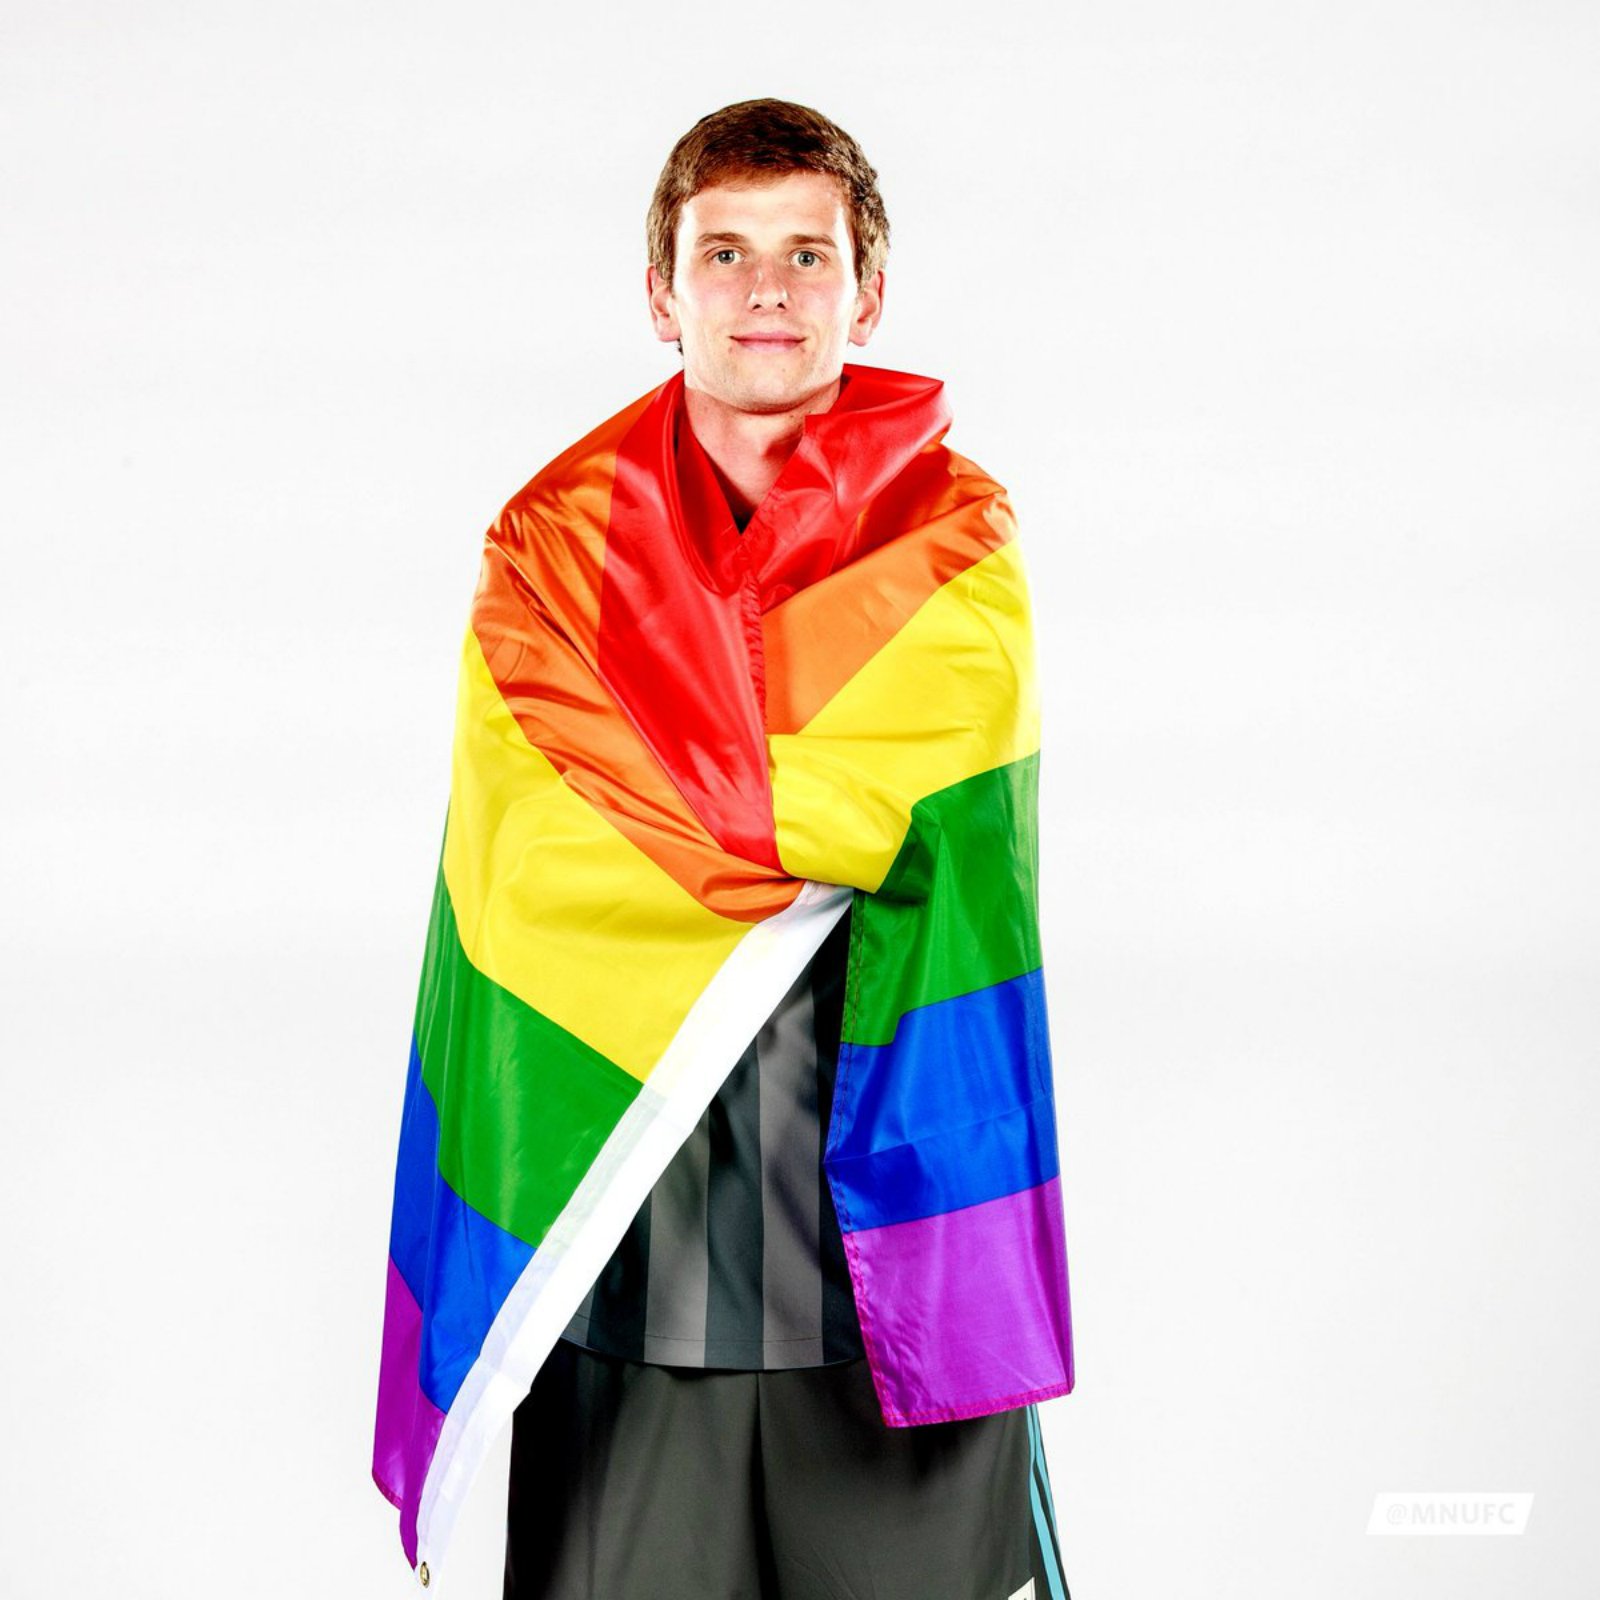 Collin Martin, pioner en el futbol mundial: "Sóc obertament gai"